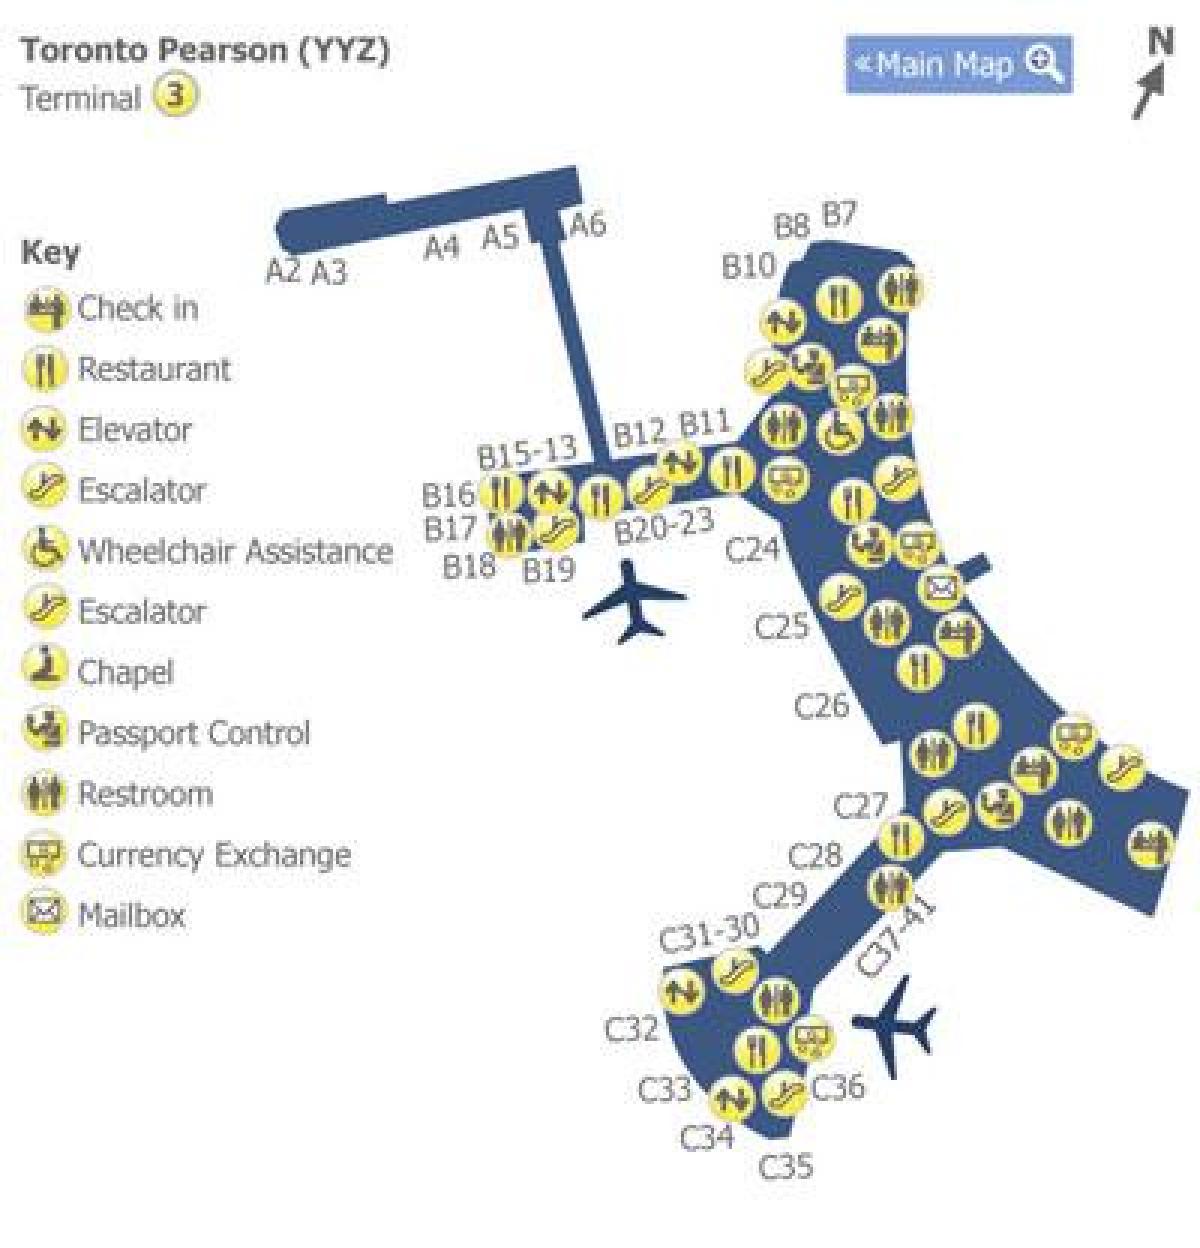 Քարտեզ Տորոնտոյի Pearson օդանավակայան տերմինալ 3